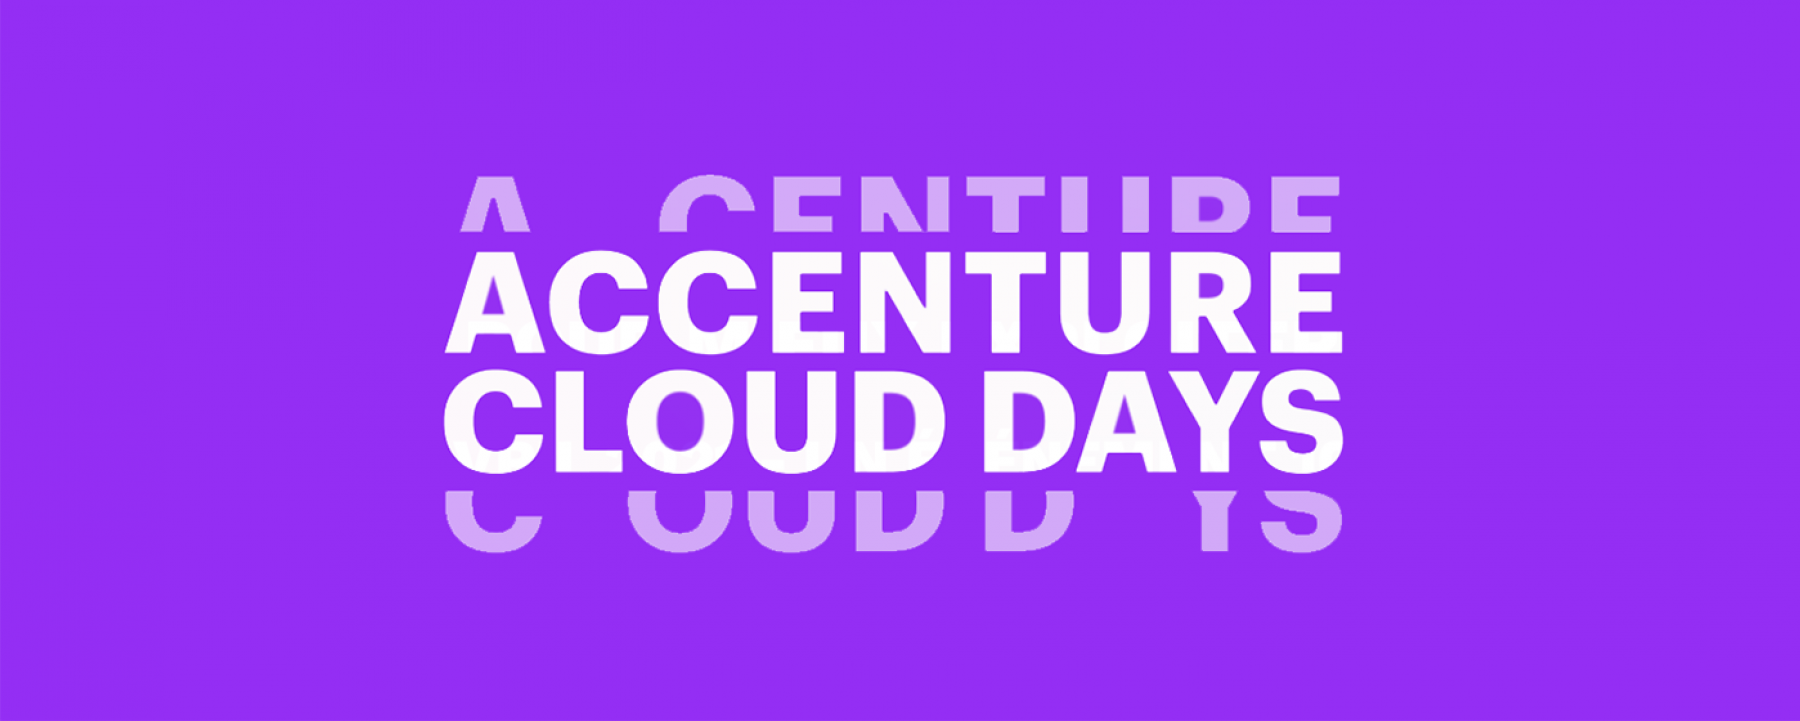 Accenture cloud days, du 14 au 15 avril